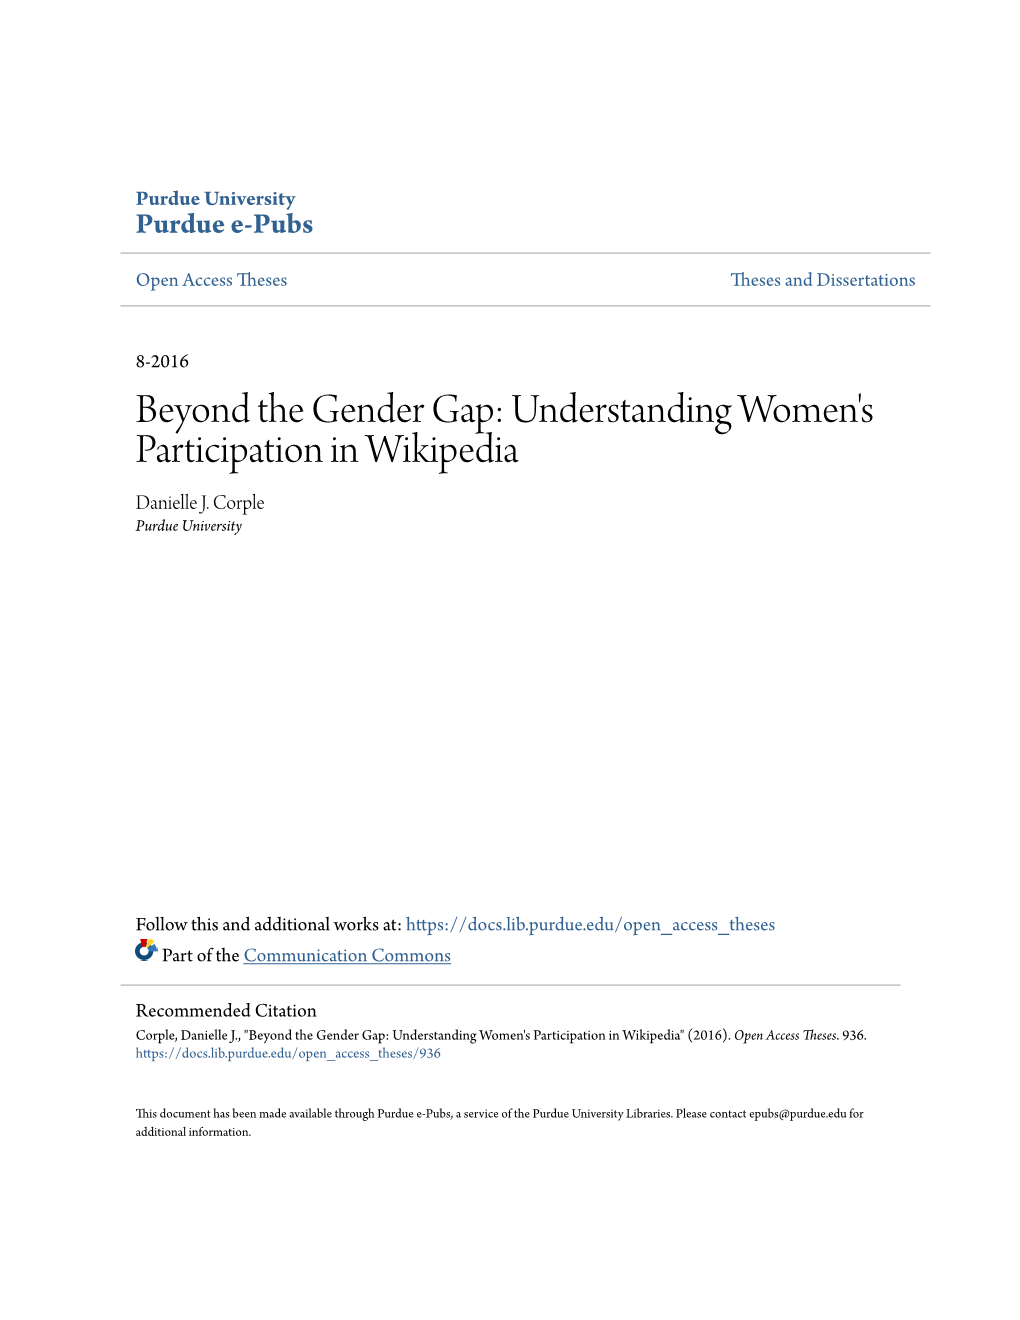 Understanding Women's Participation in Wikipedia Danielle J